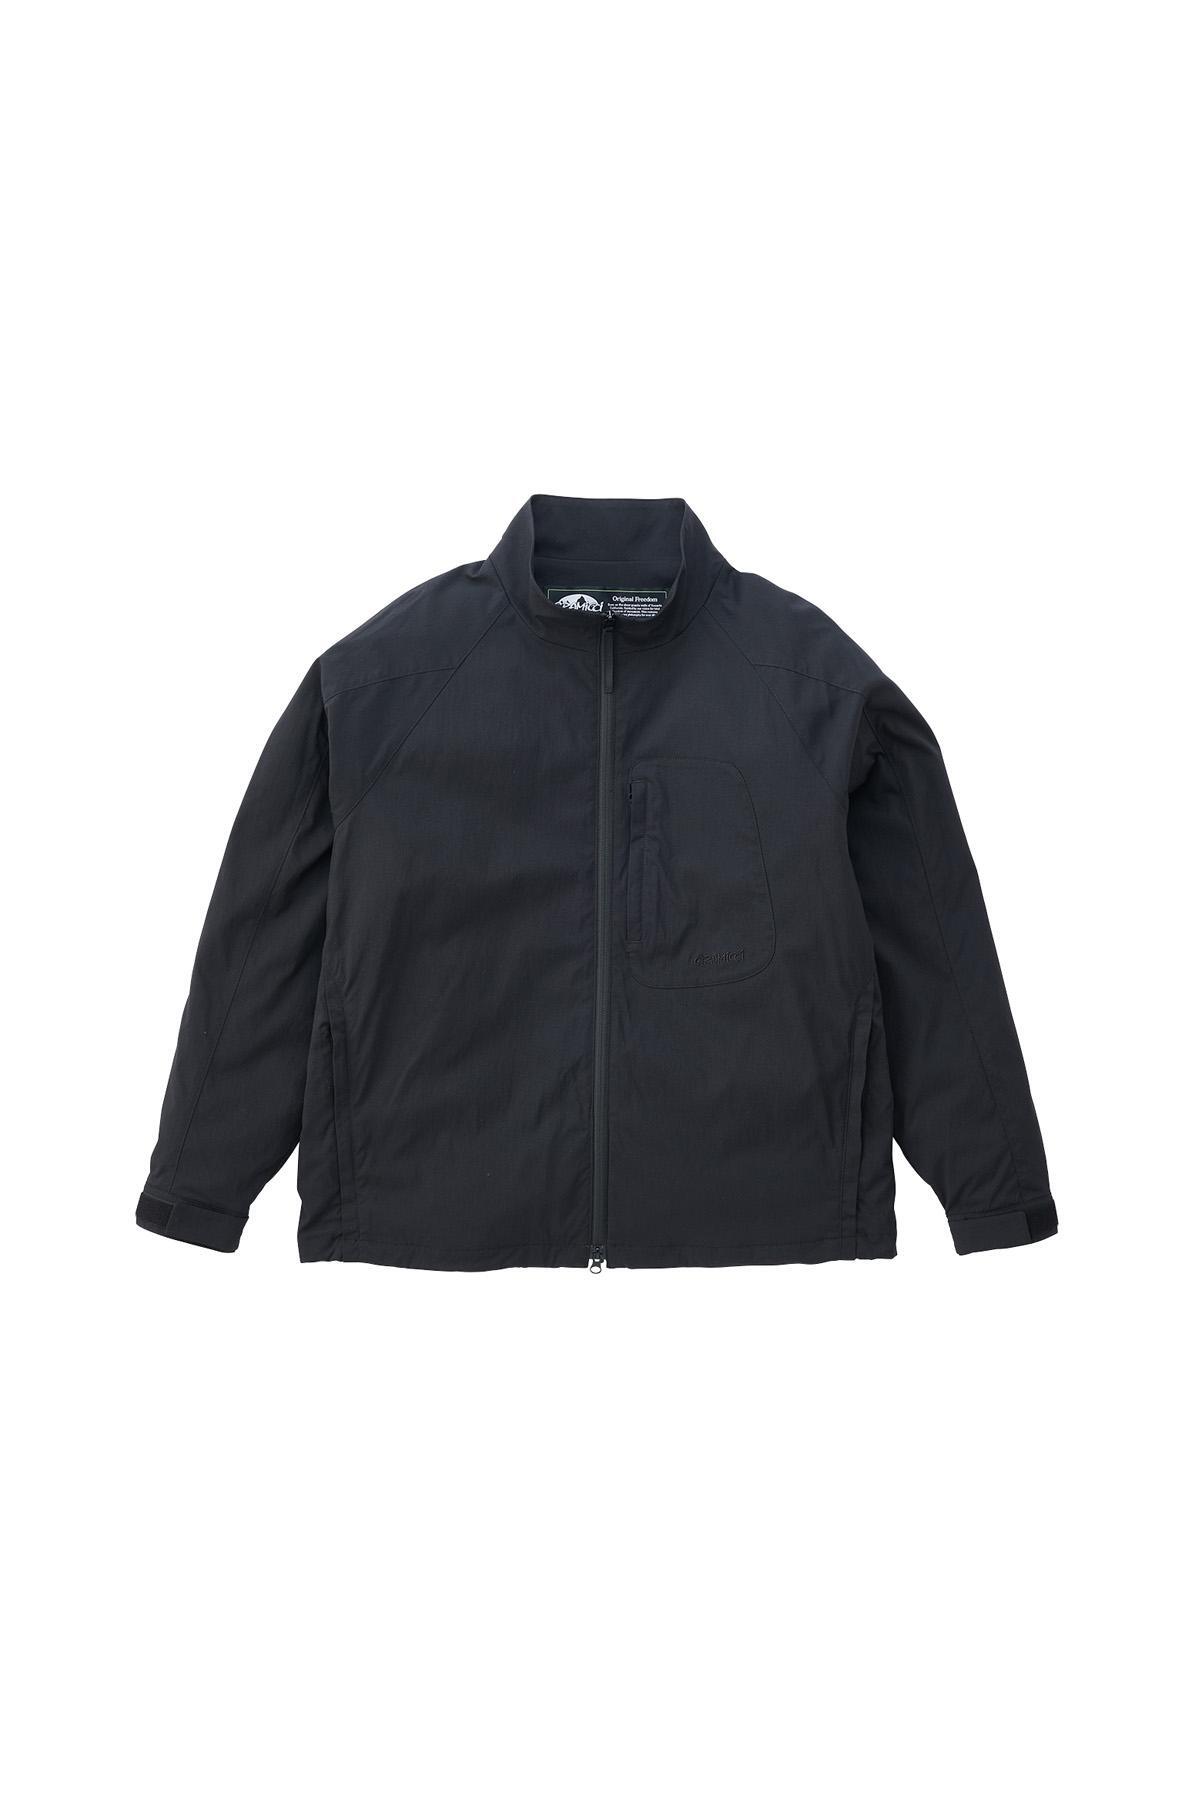 그라미치 소프트쉘 EQT 재킷 블랙